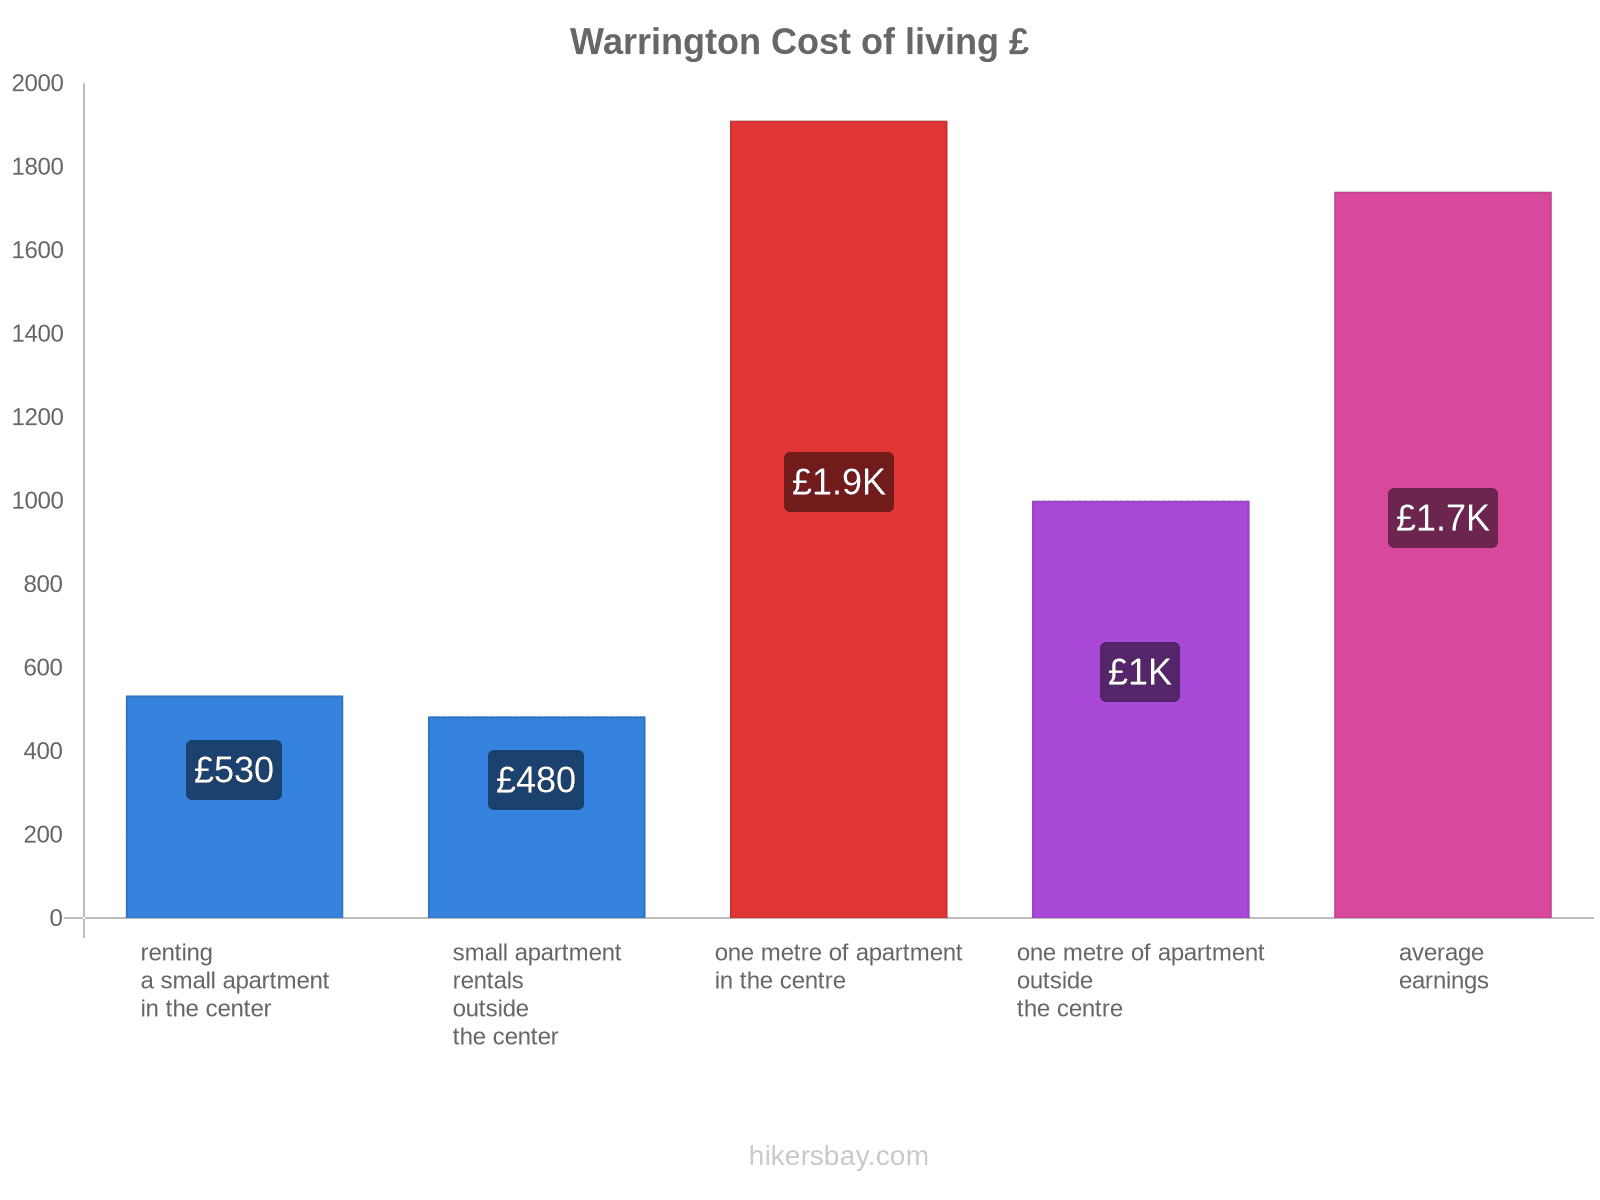 Warrington cost of living hikersbay.com